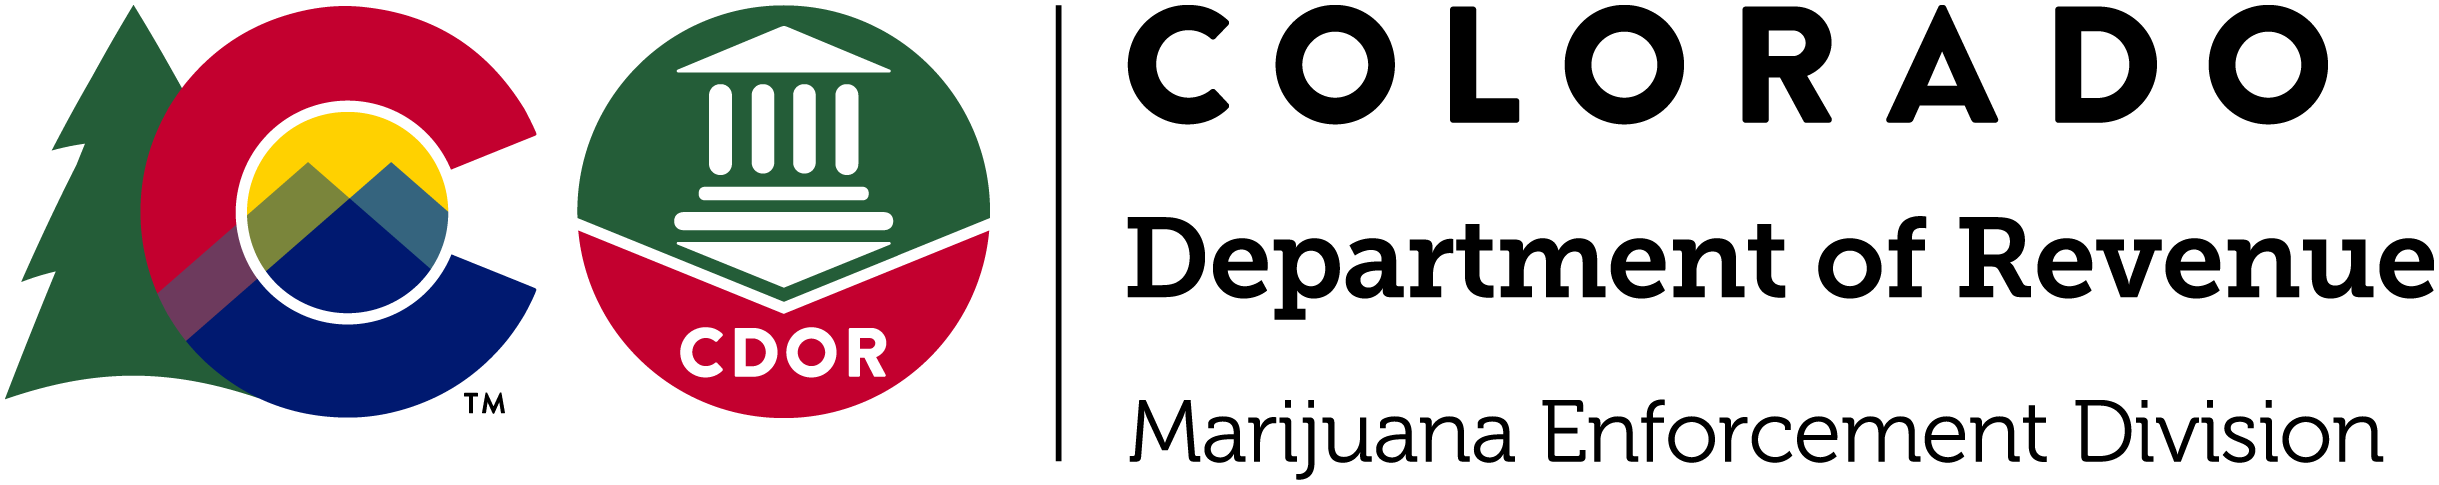 NEW MED Logo June 2021.png detail image